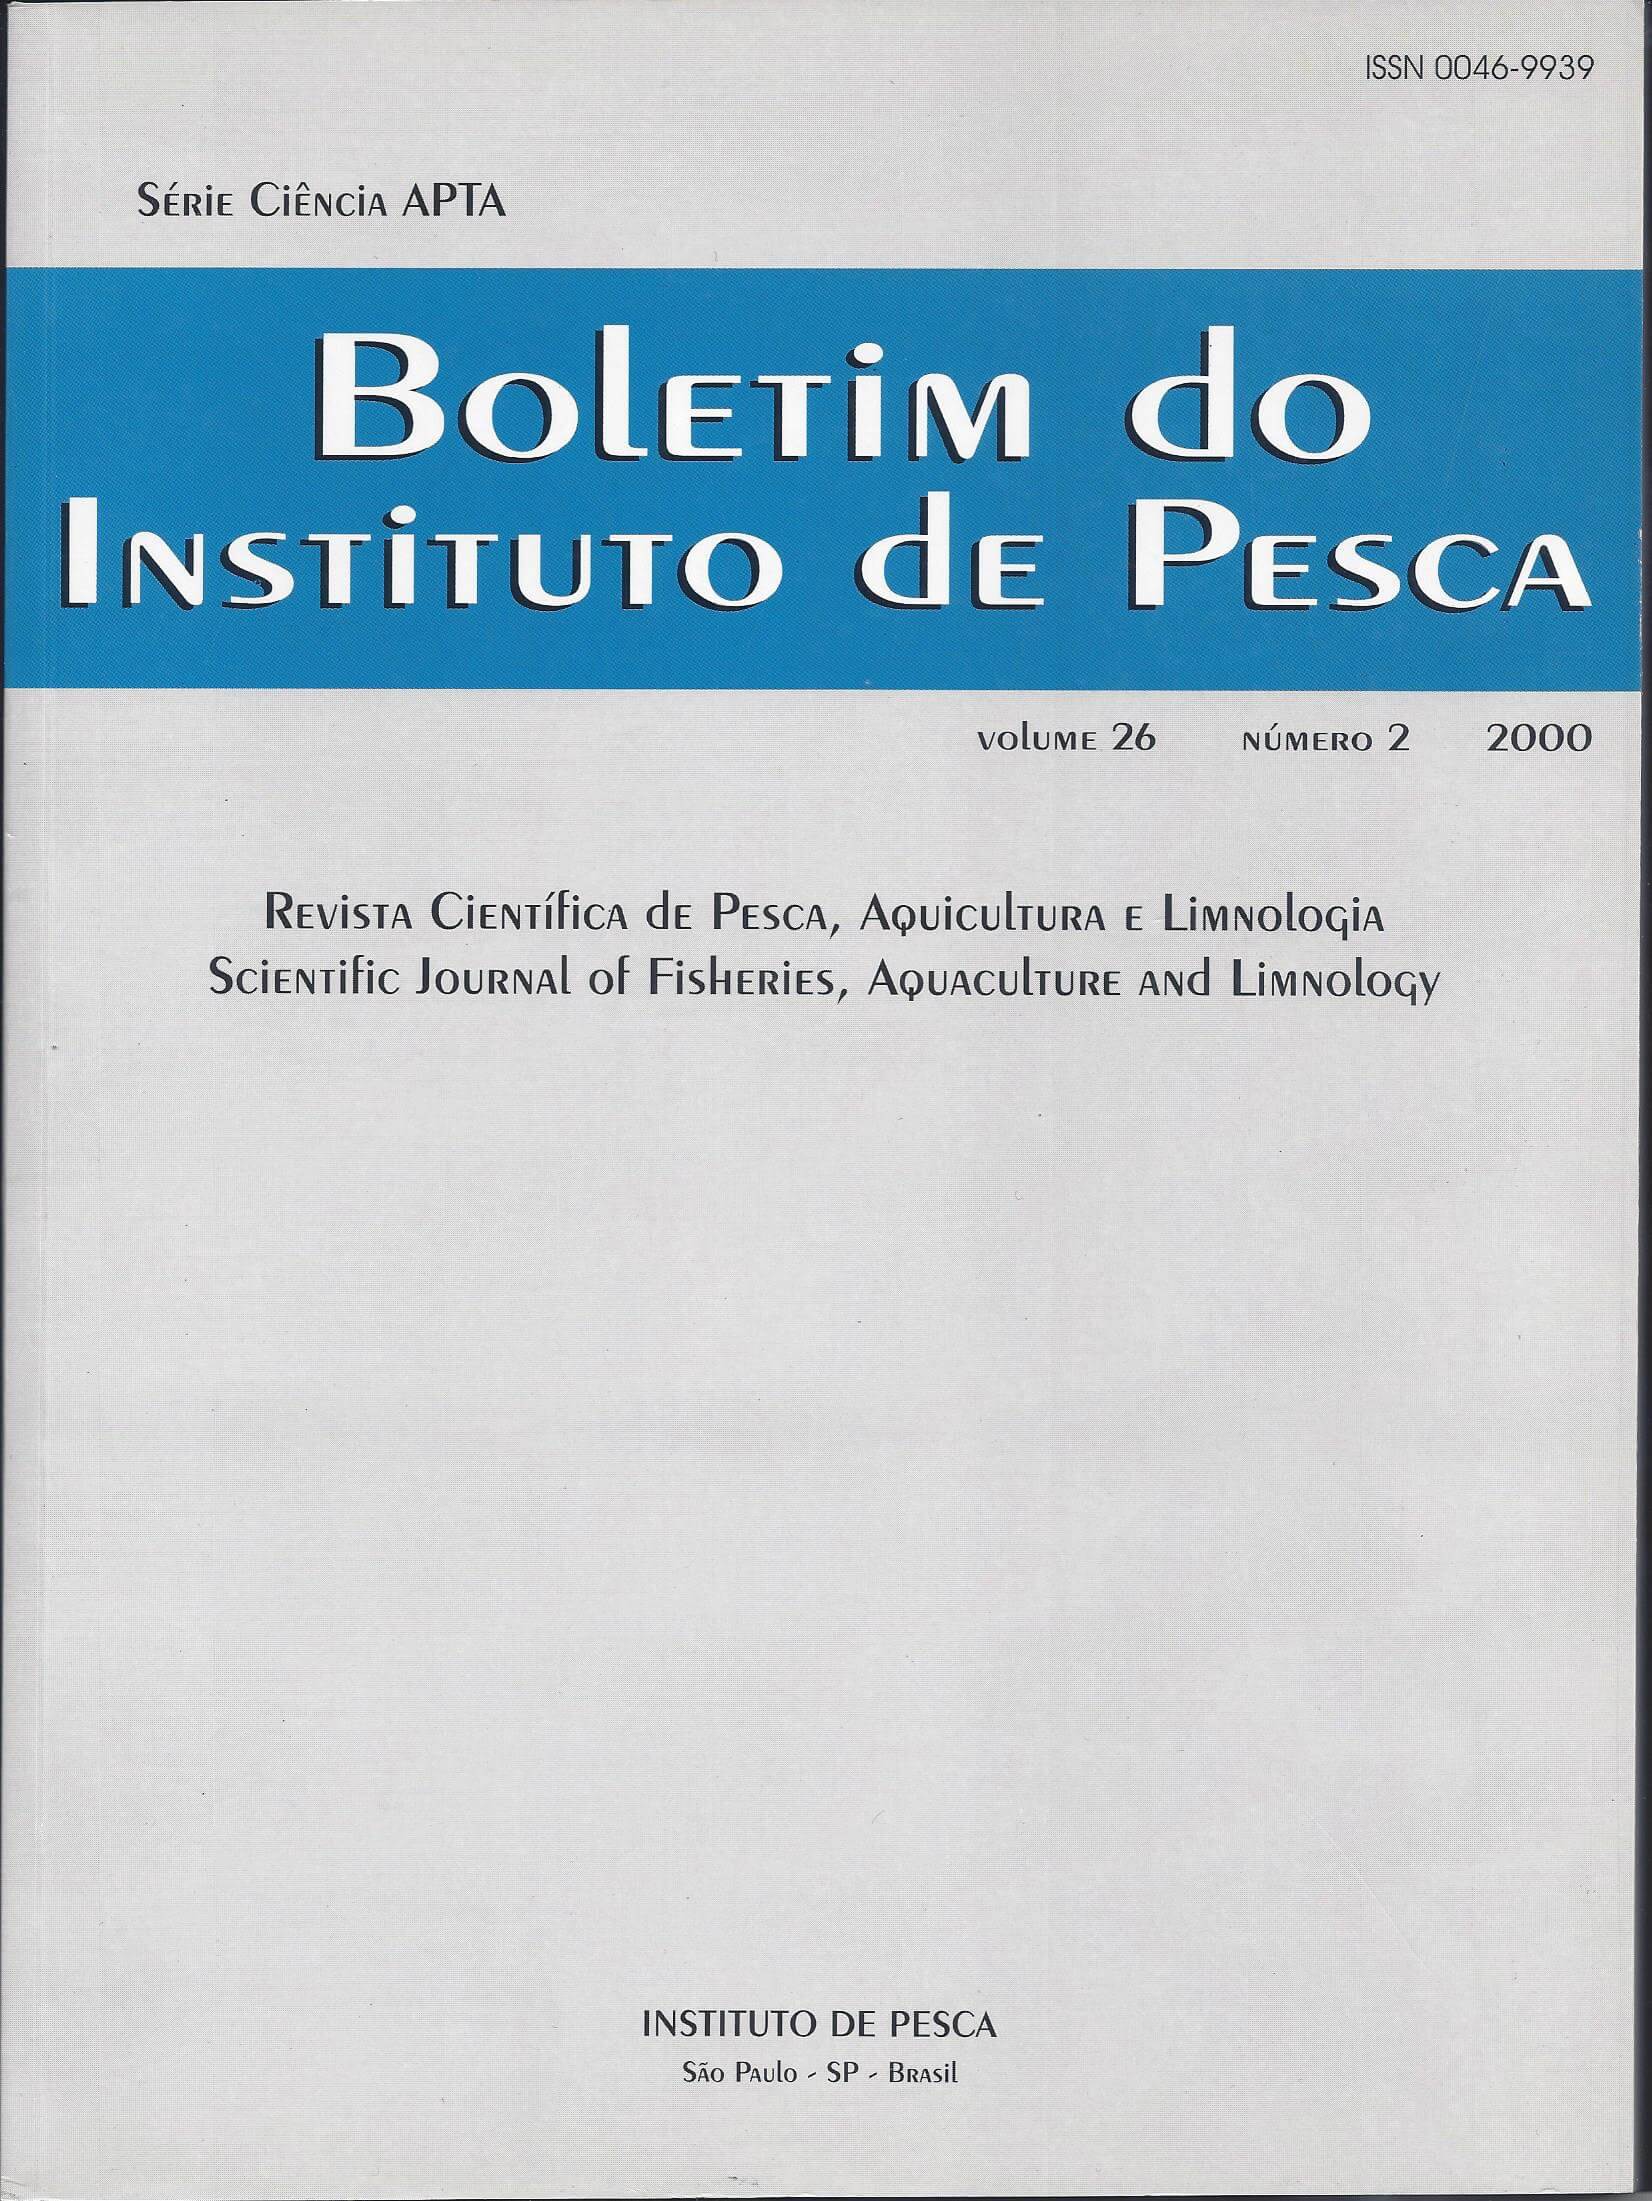 					View Vol. 26 No. 2 (2000): BOLETIM DO INSTITUTO DE PESCA
				